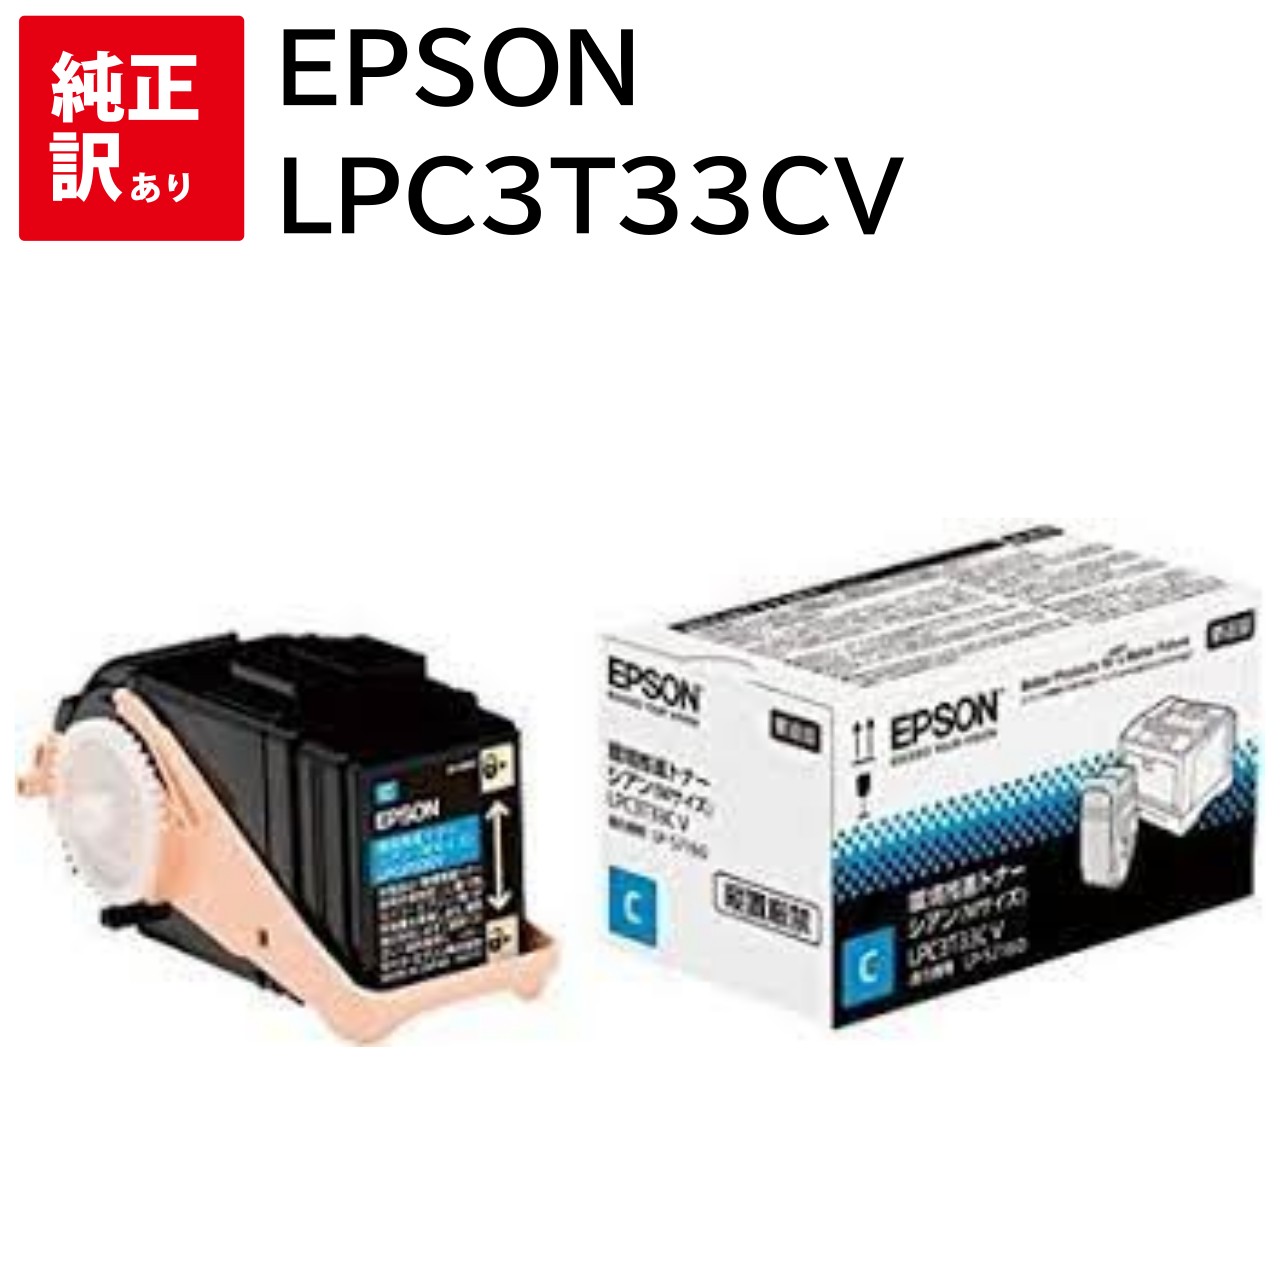   EPSON LPC3T33CV Ķ  M LP-S7160 LP-S7160Z LP-S71C7 ץ ...